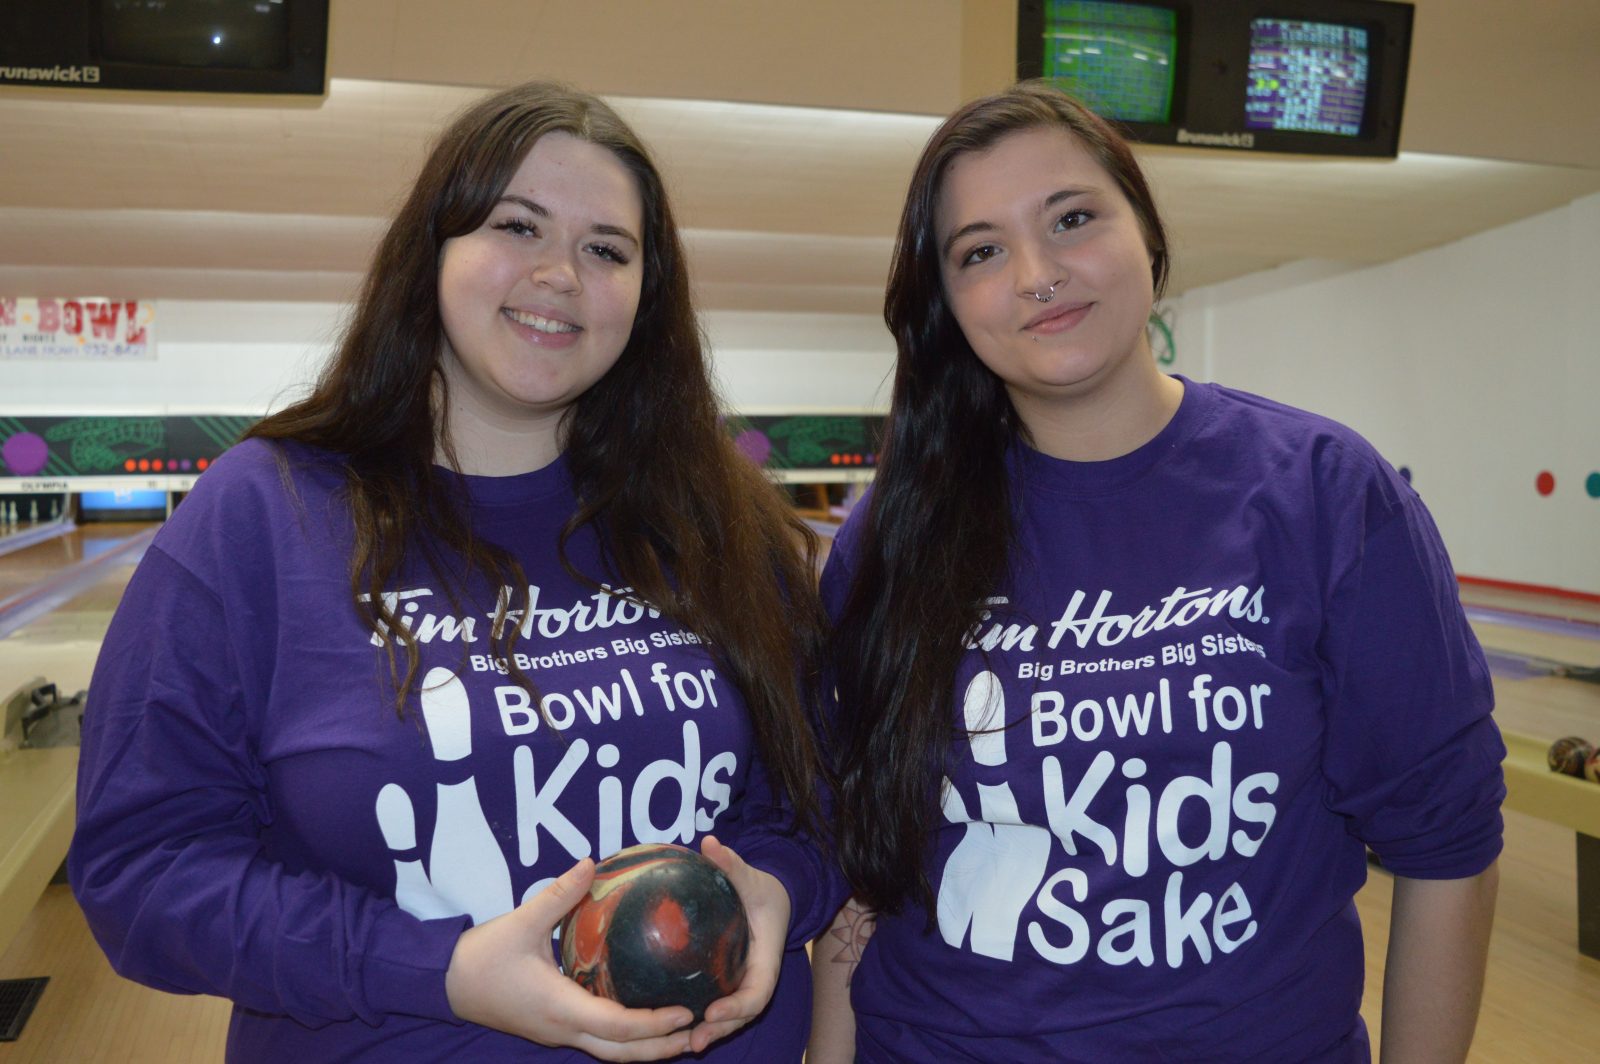 Over $67K raised by Tim Hortons Bowl for Kid’s Sake 2019